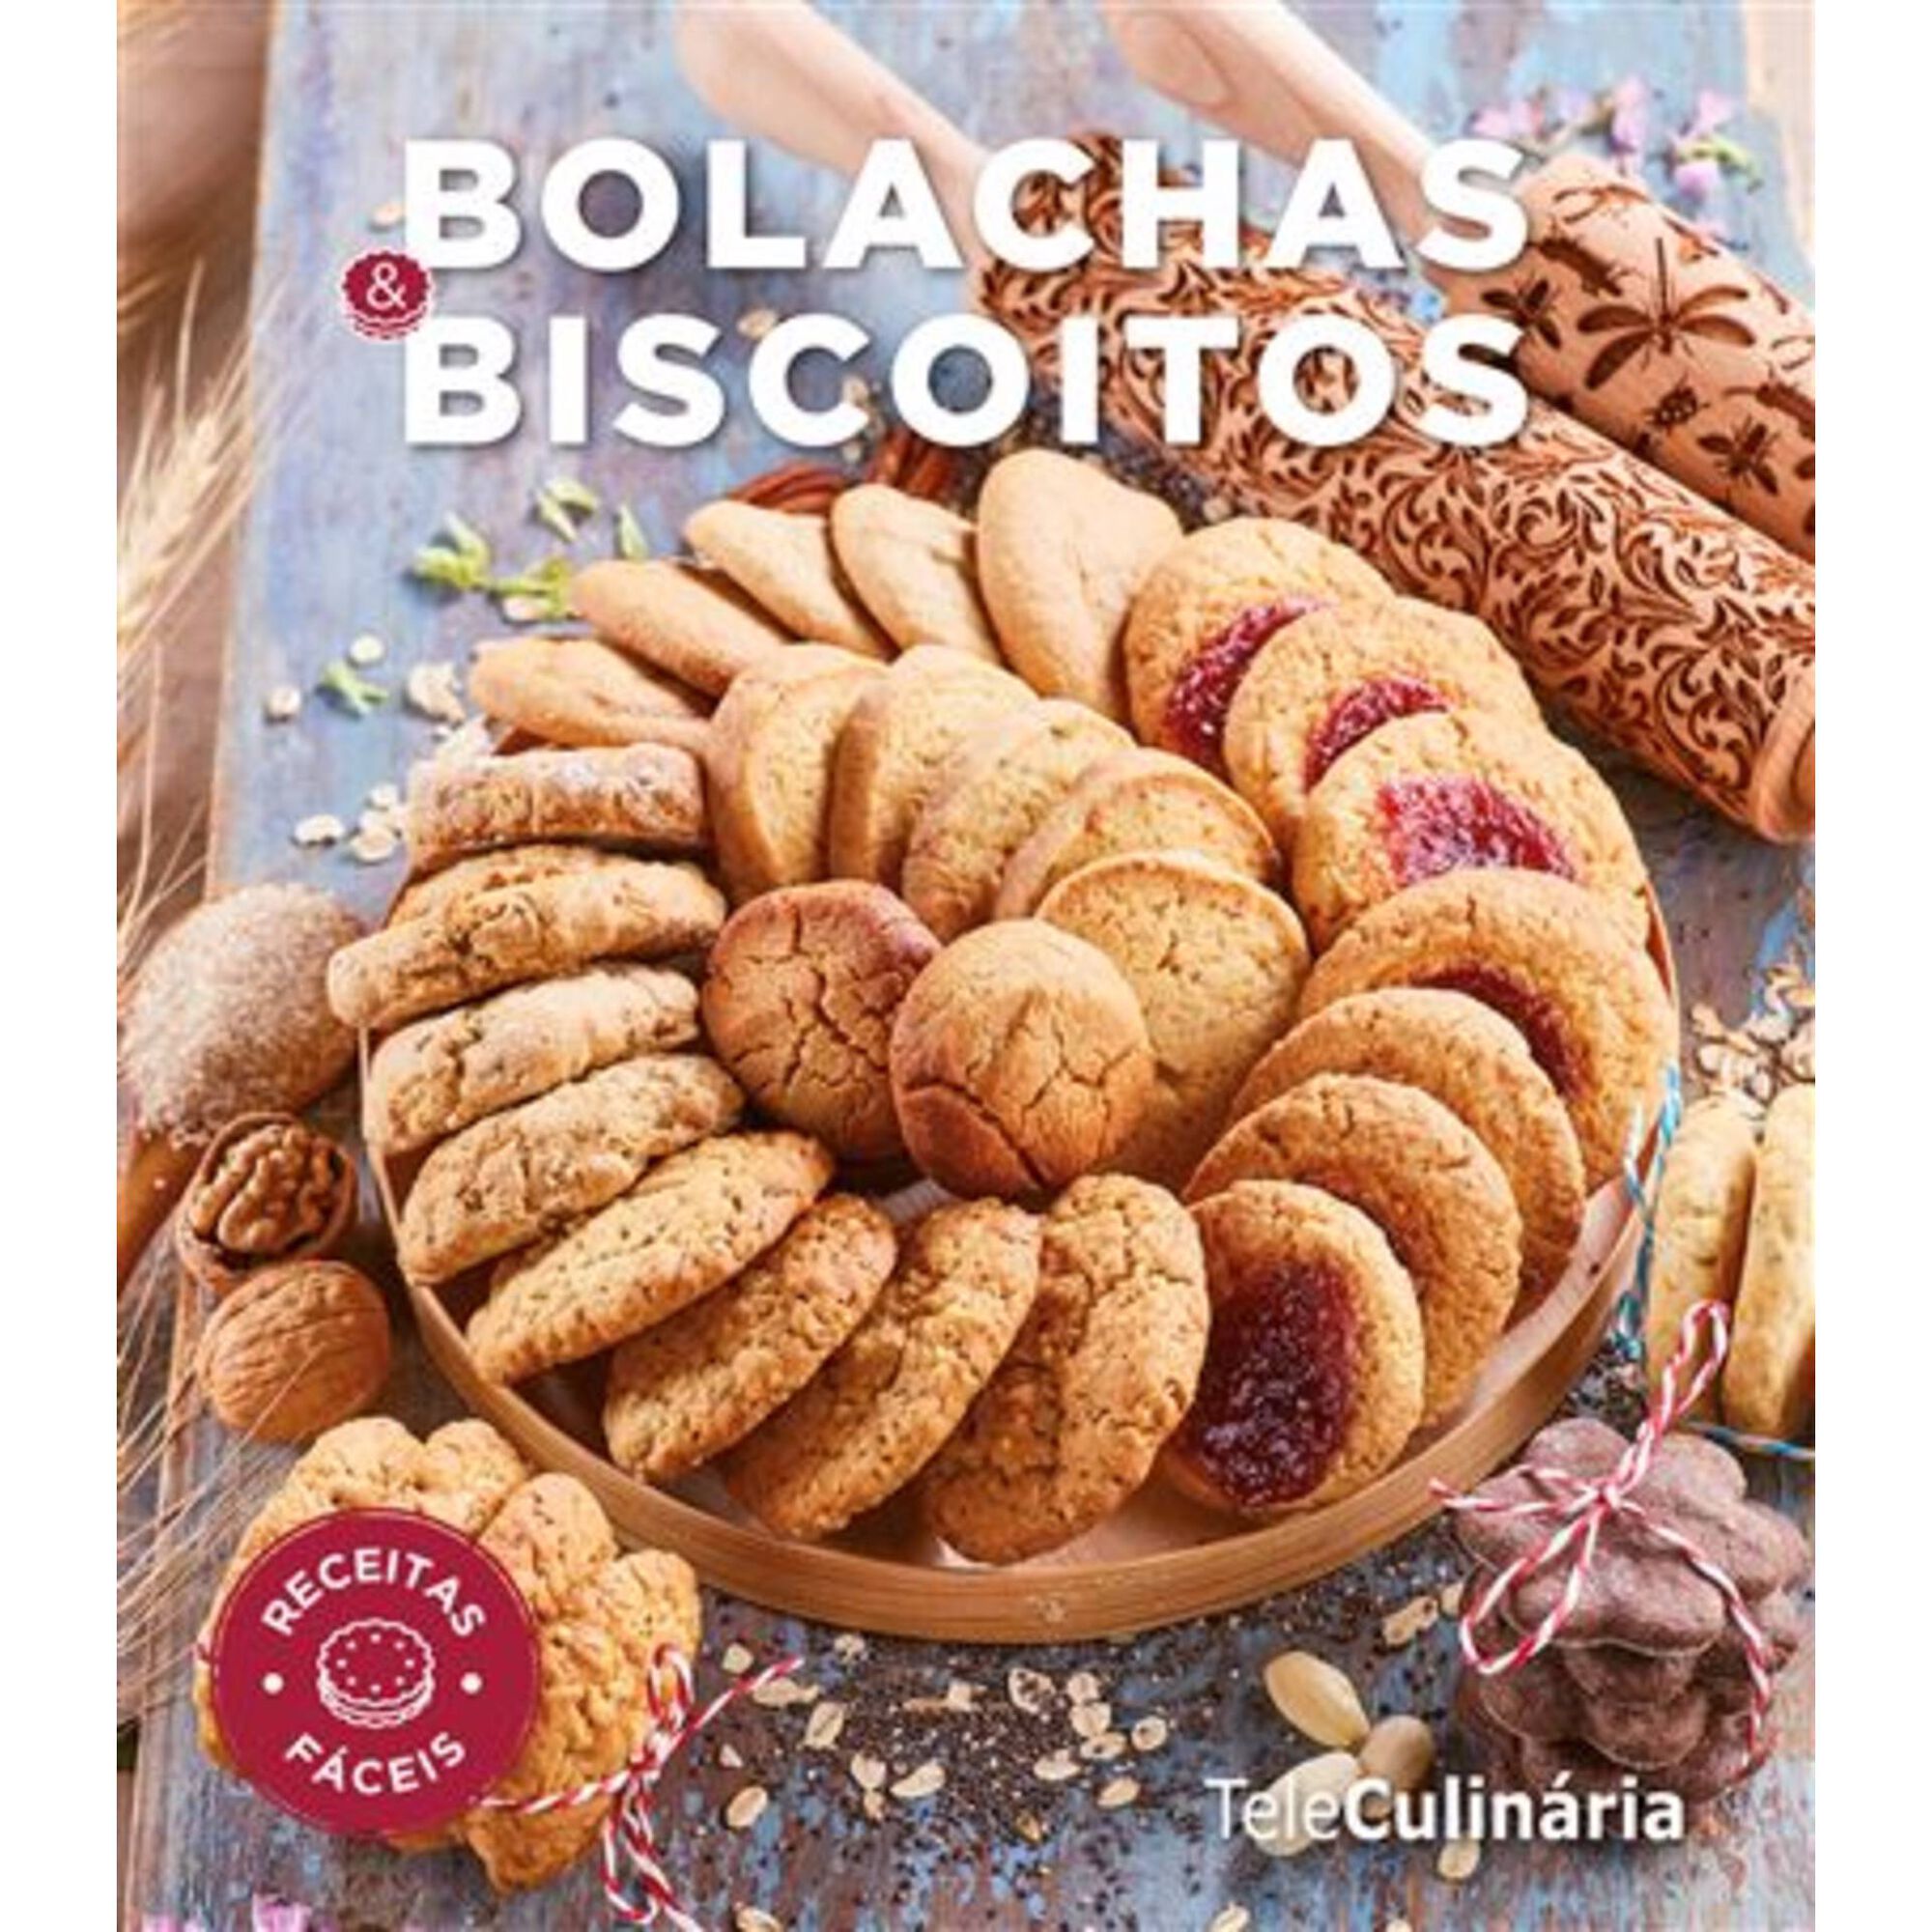 Bolachas & Biscoitos